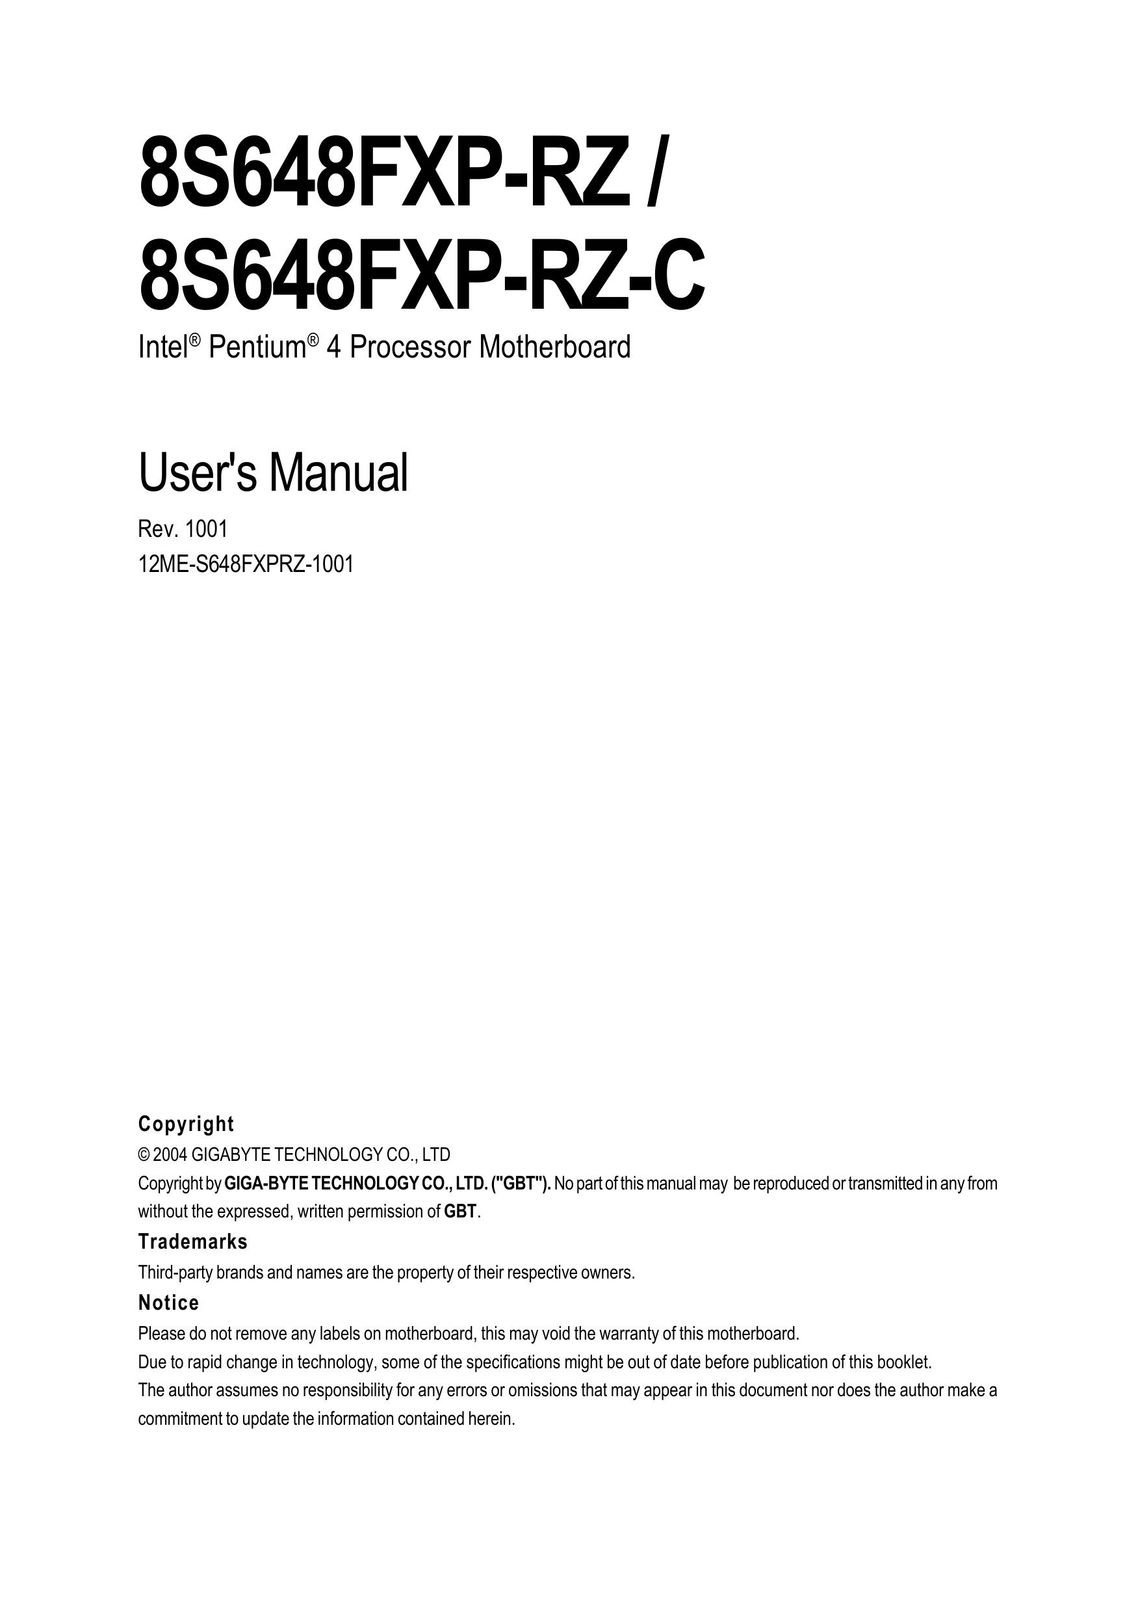 Gigabyte 8S648FXP-RZ Computer Hardware User Manual